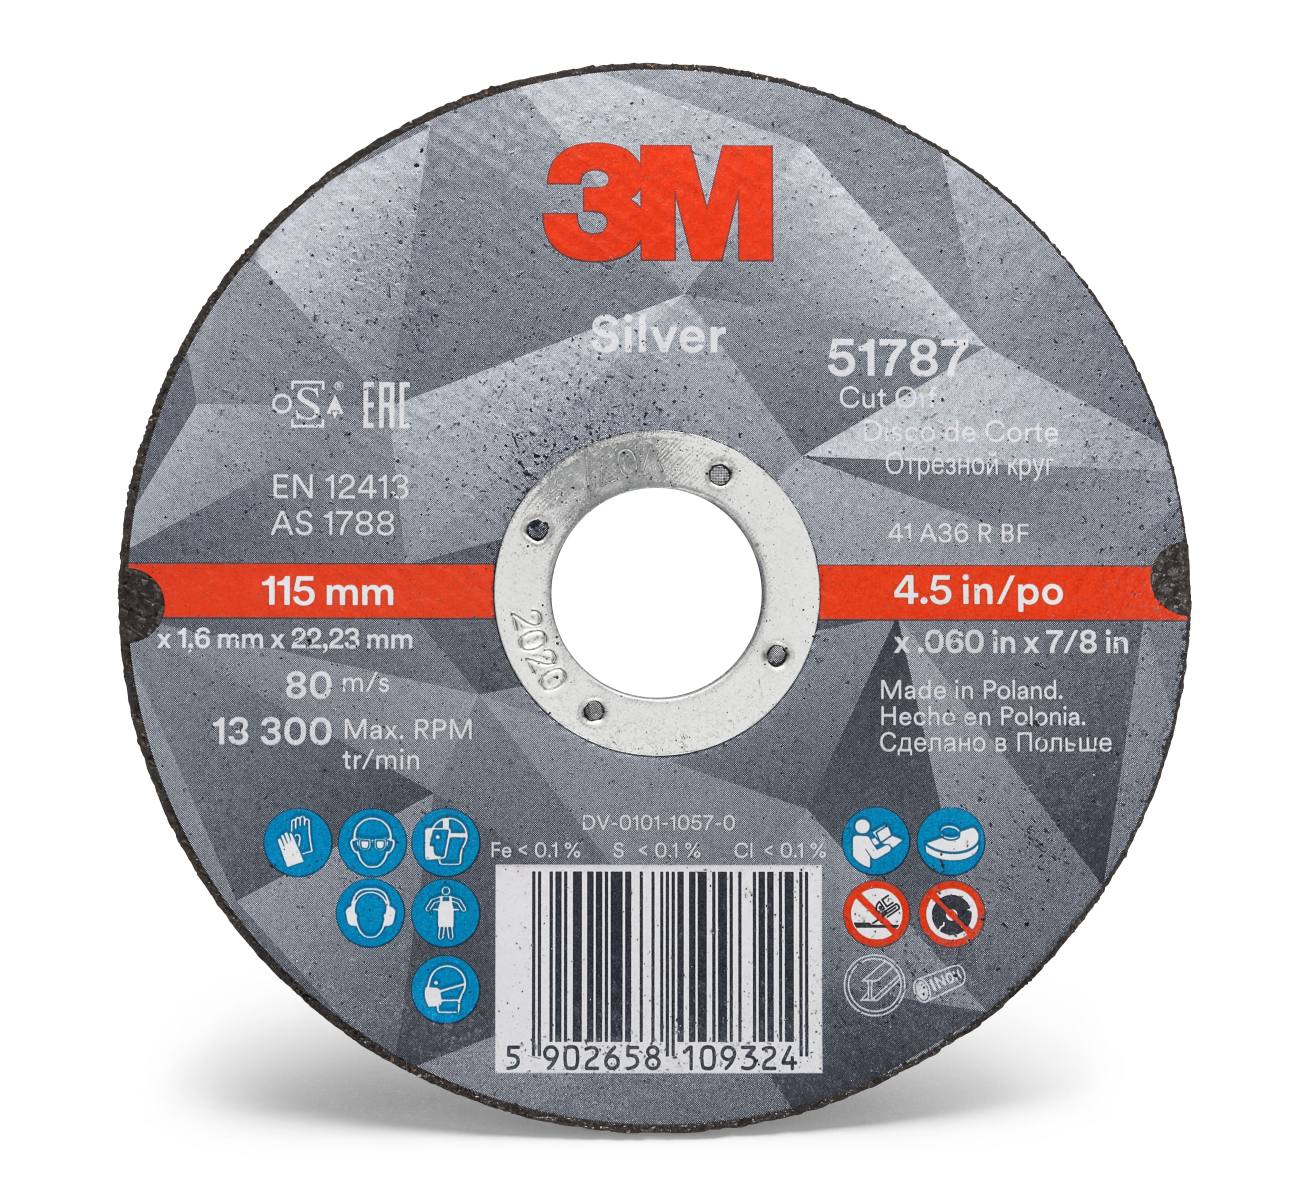 3M Silver Cut-Off Wheel cutting-off wheel, 100 mm, 1.0 mm, 16 mm, T41, 51775